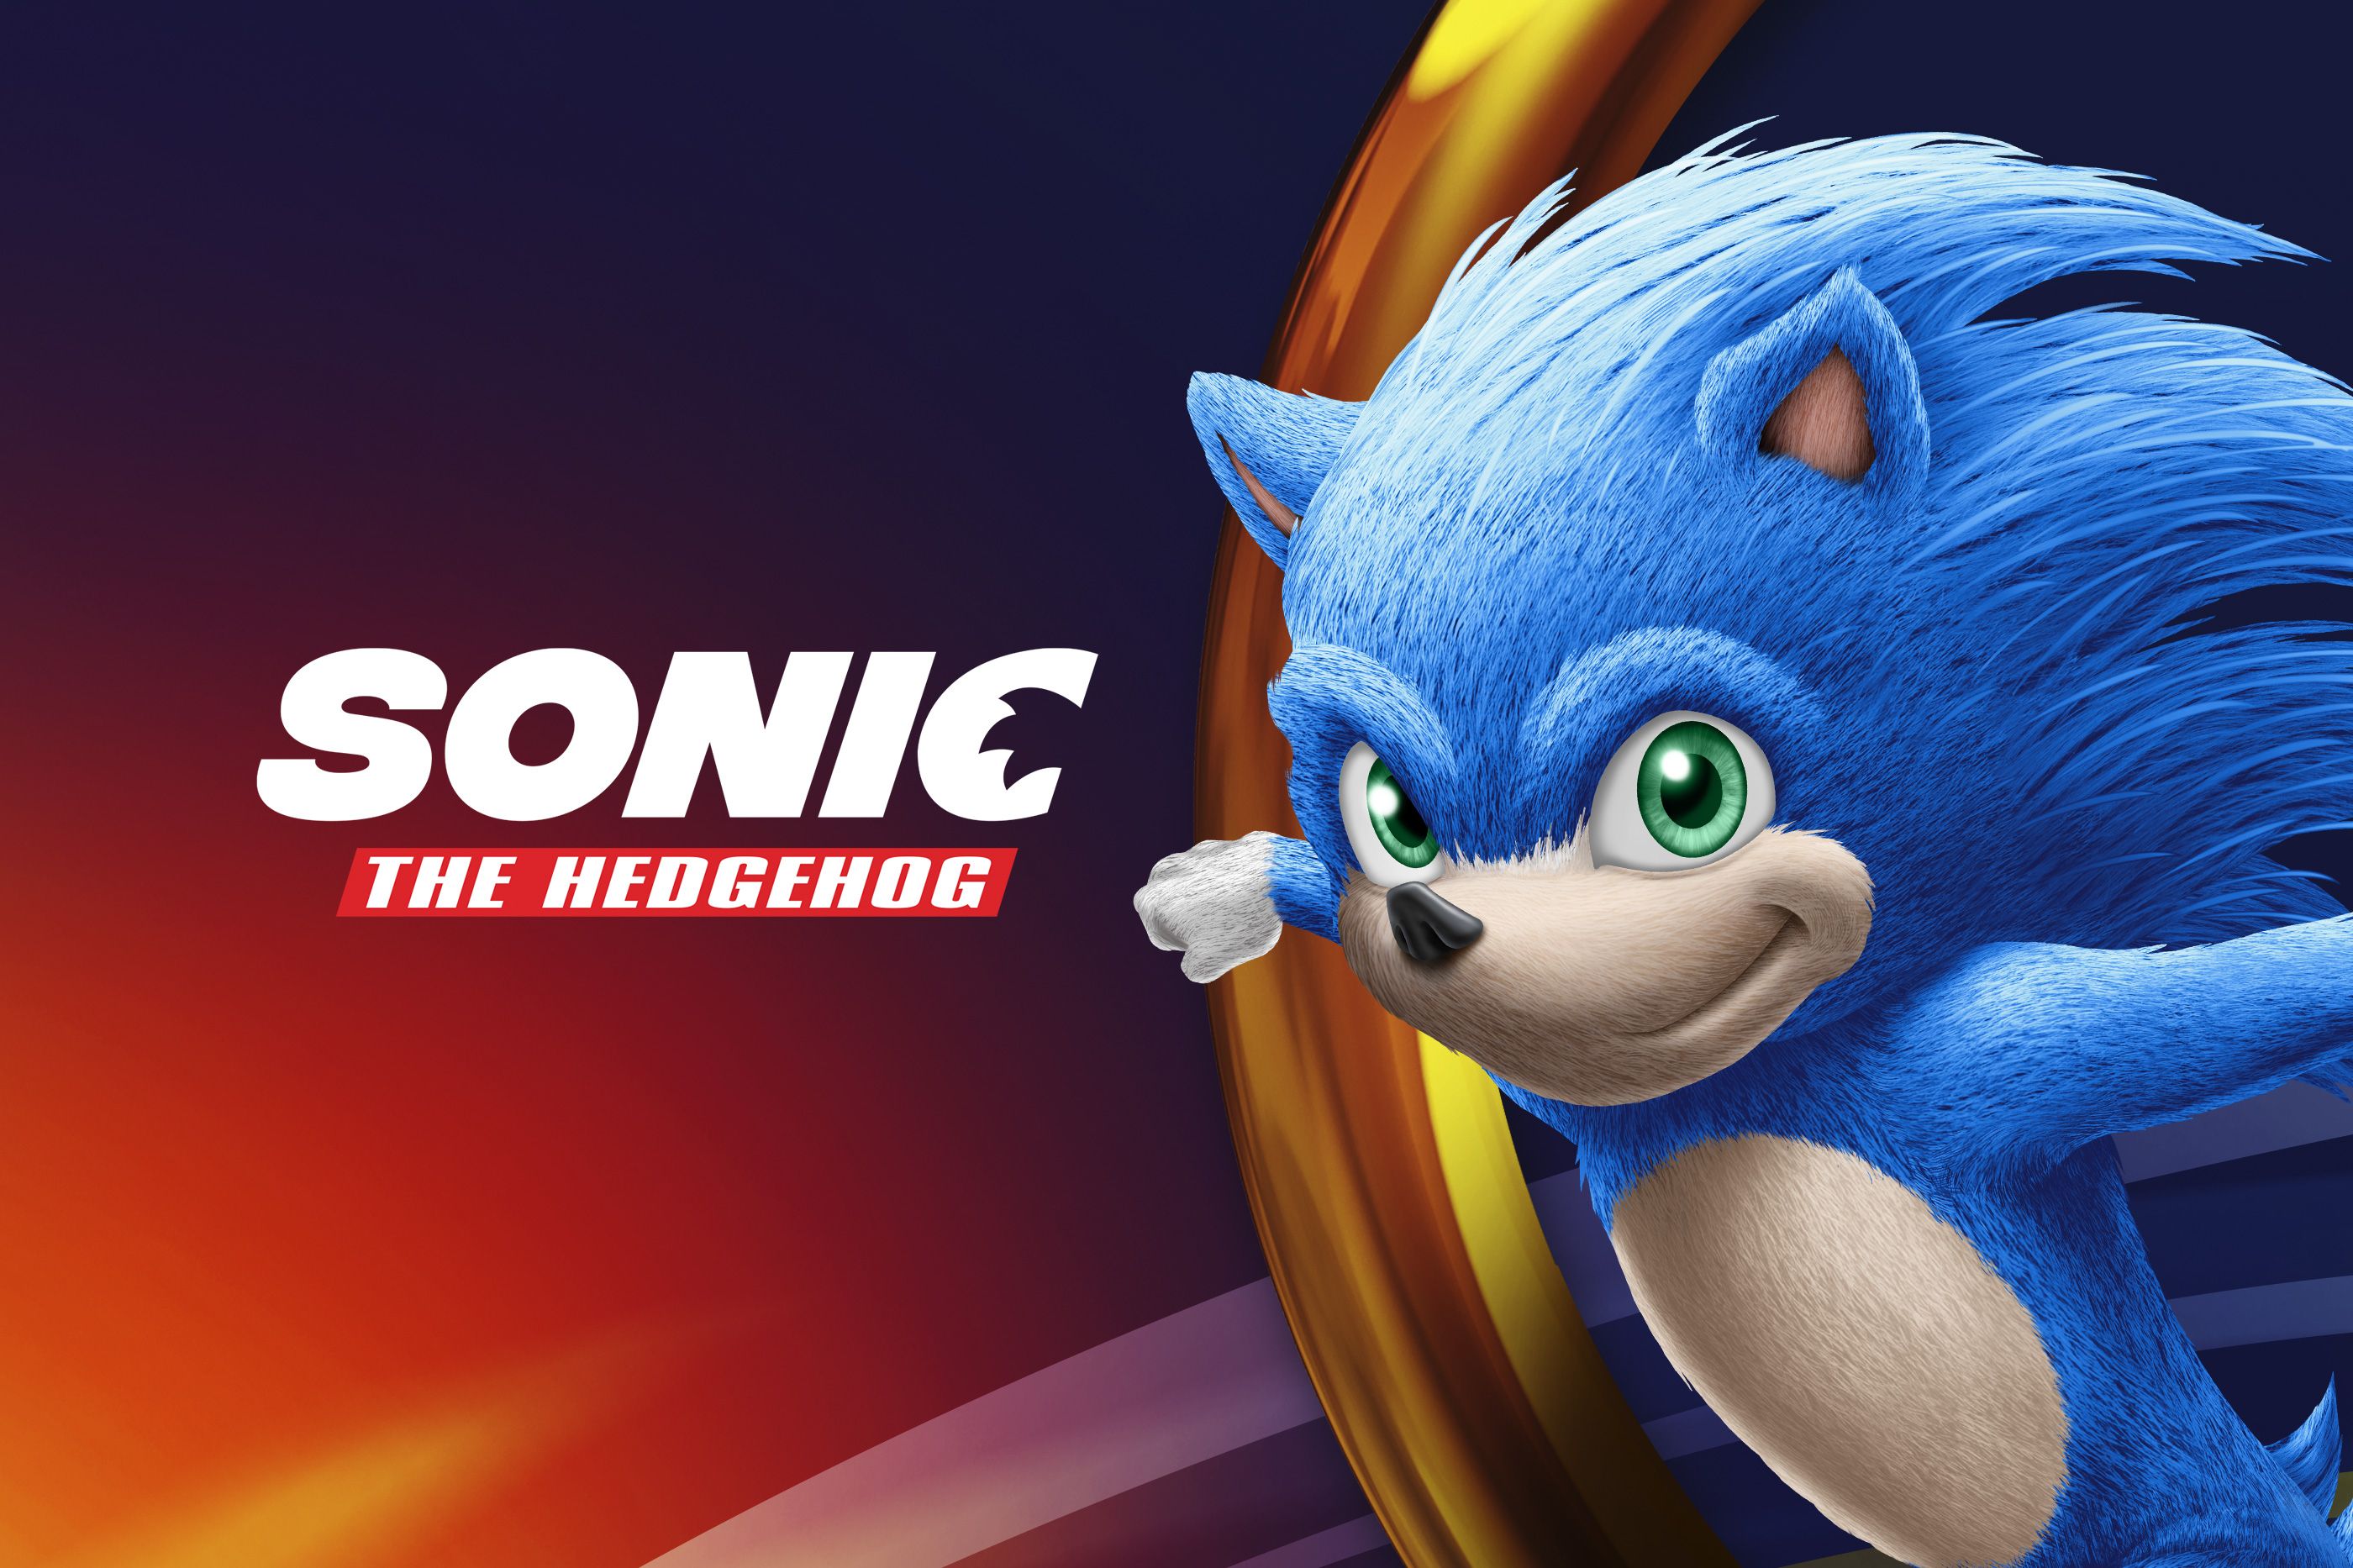 19+] Fondos de Sonic The Hedgehog Movie 2019